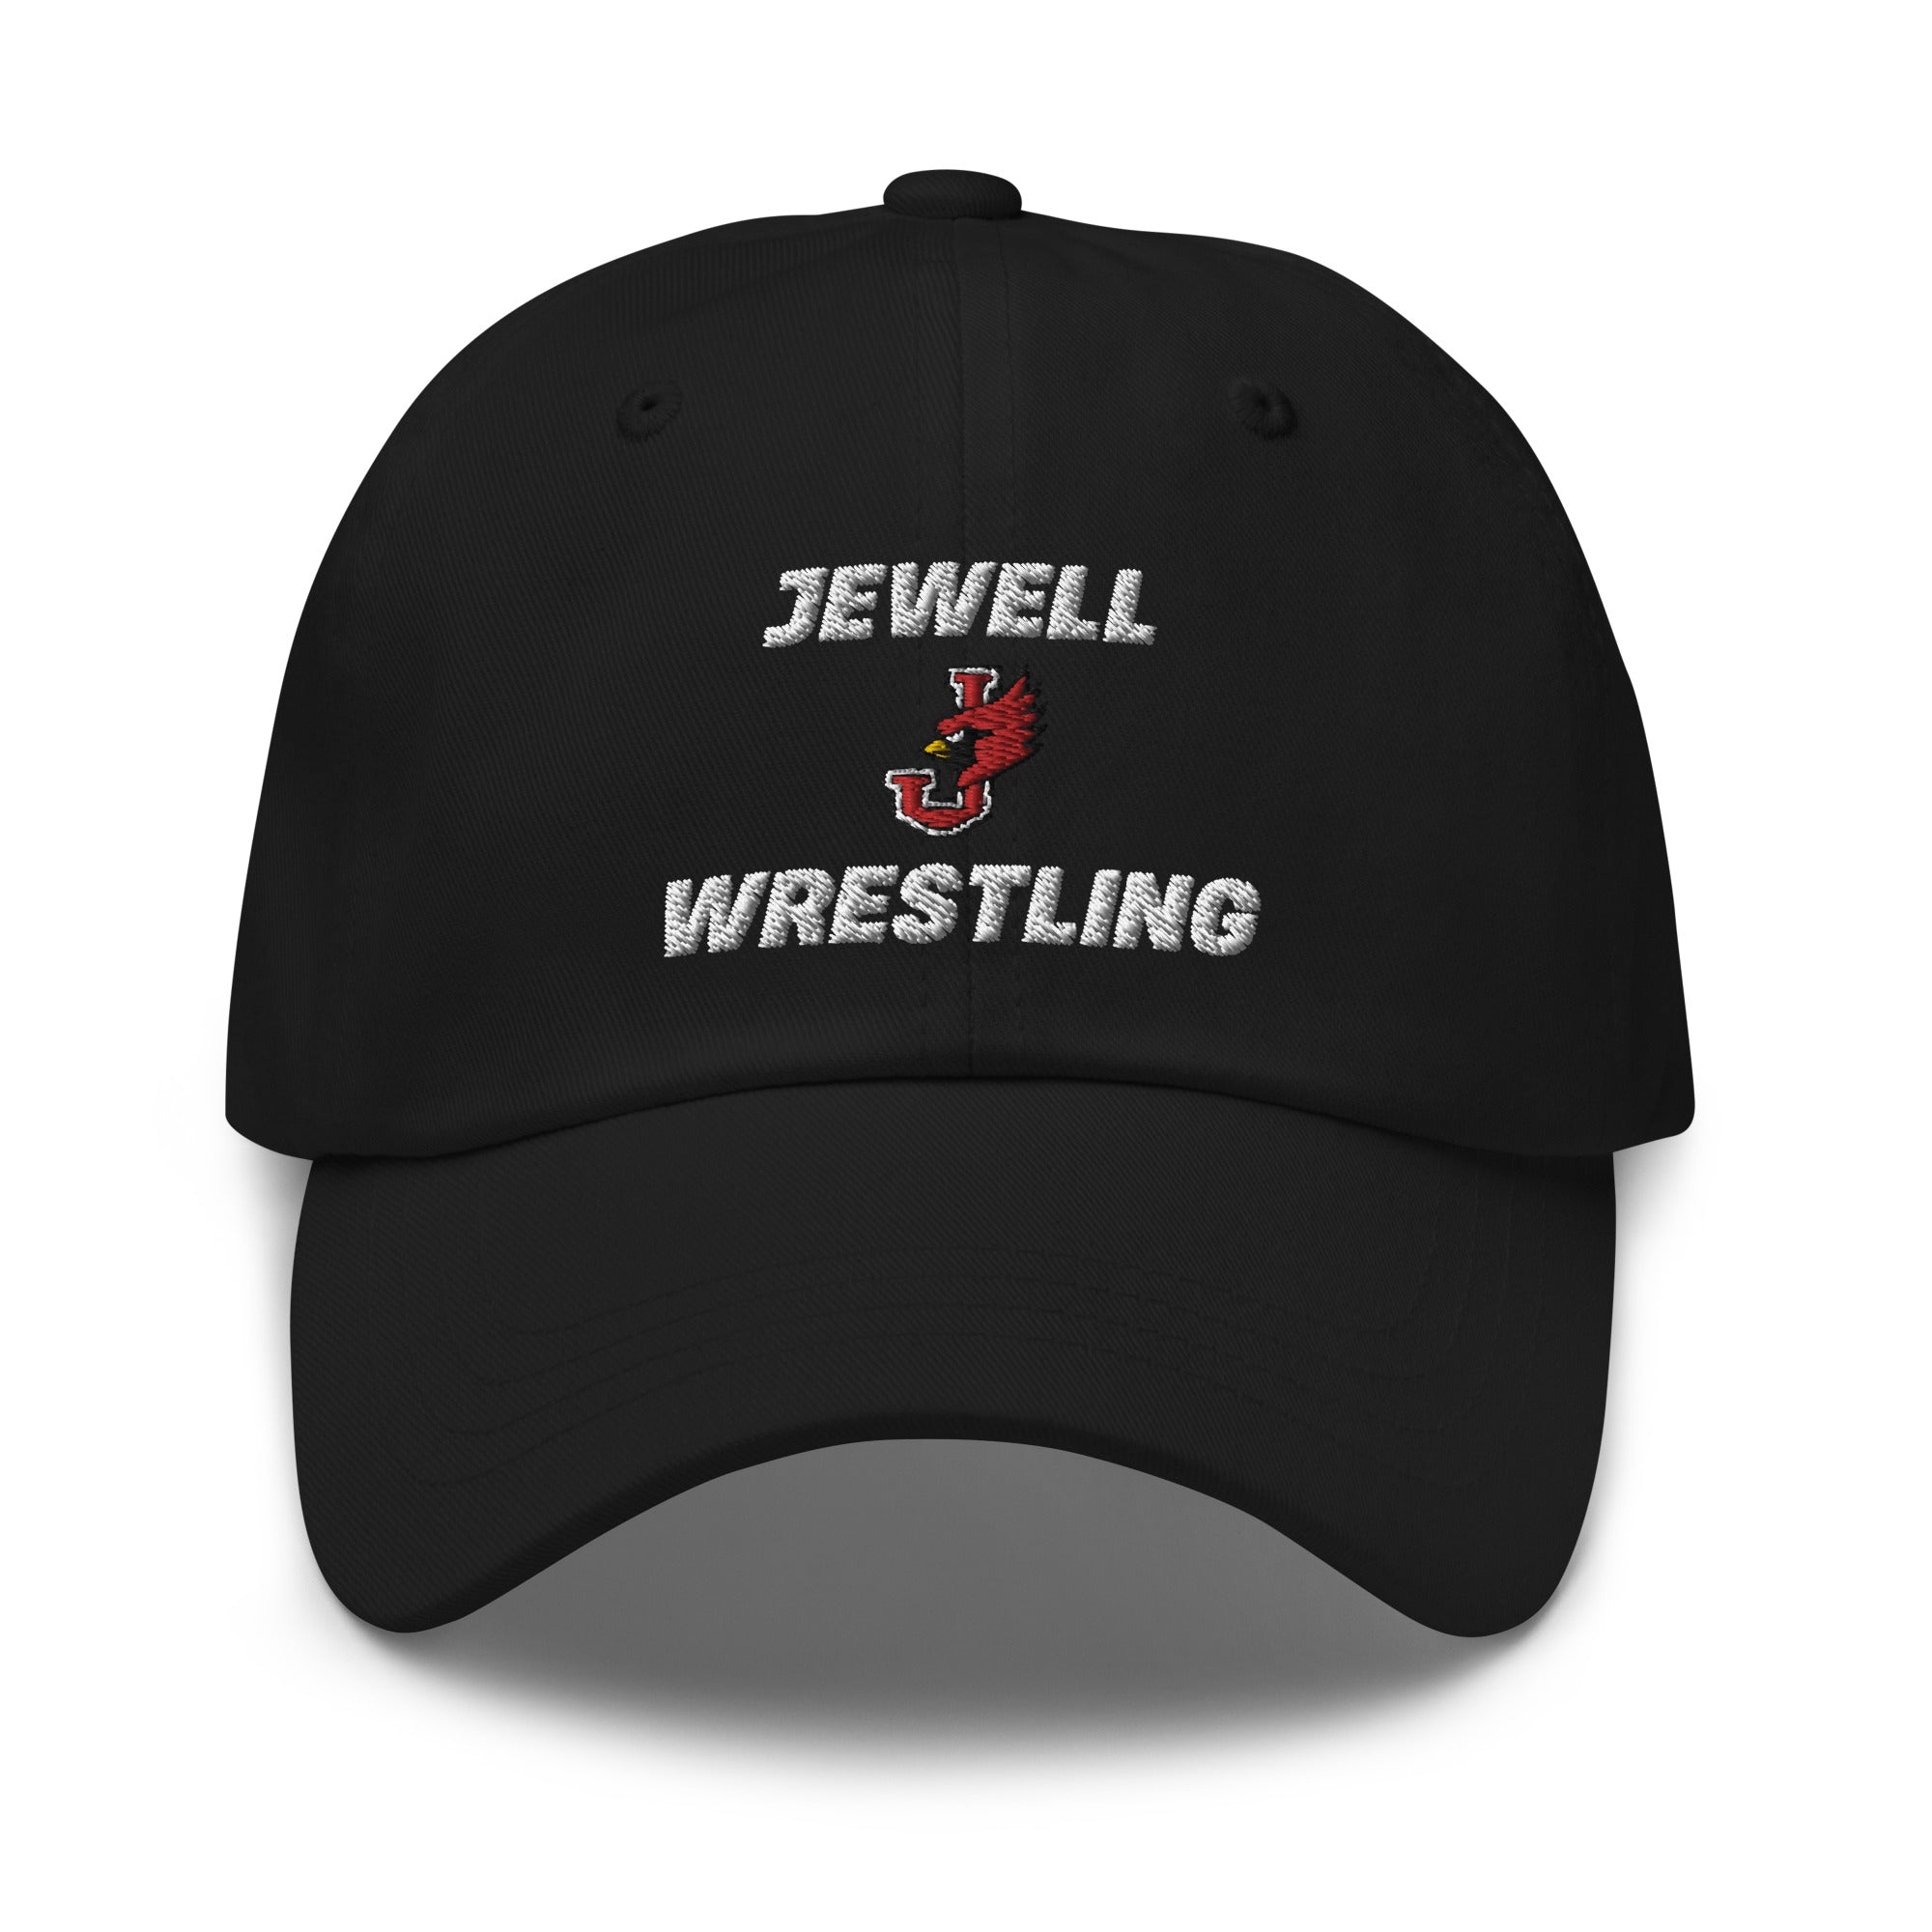 William Jewell Wrestling Classic Dad Hat